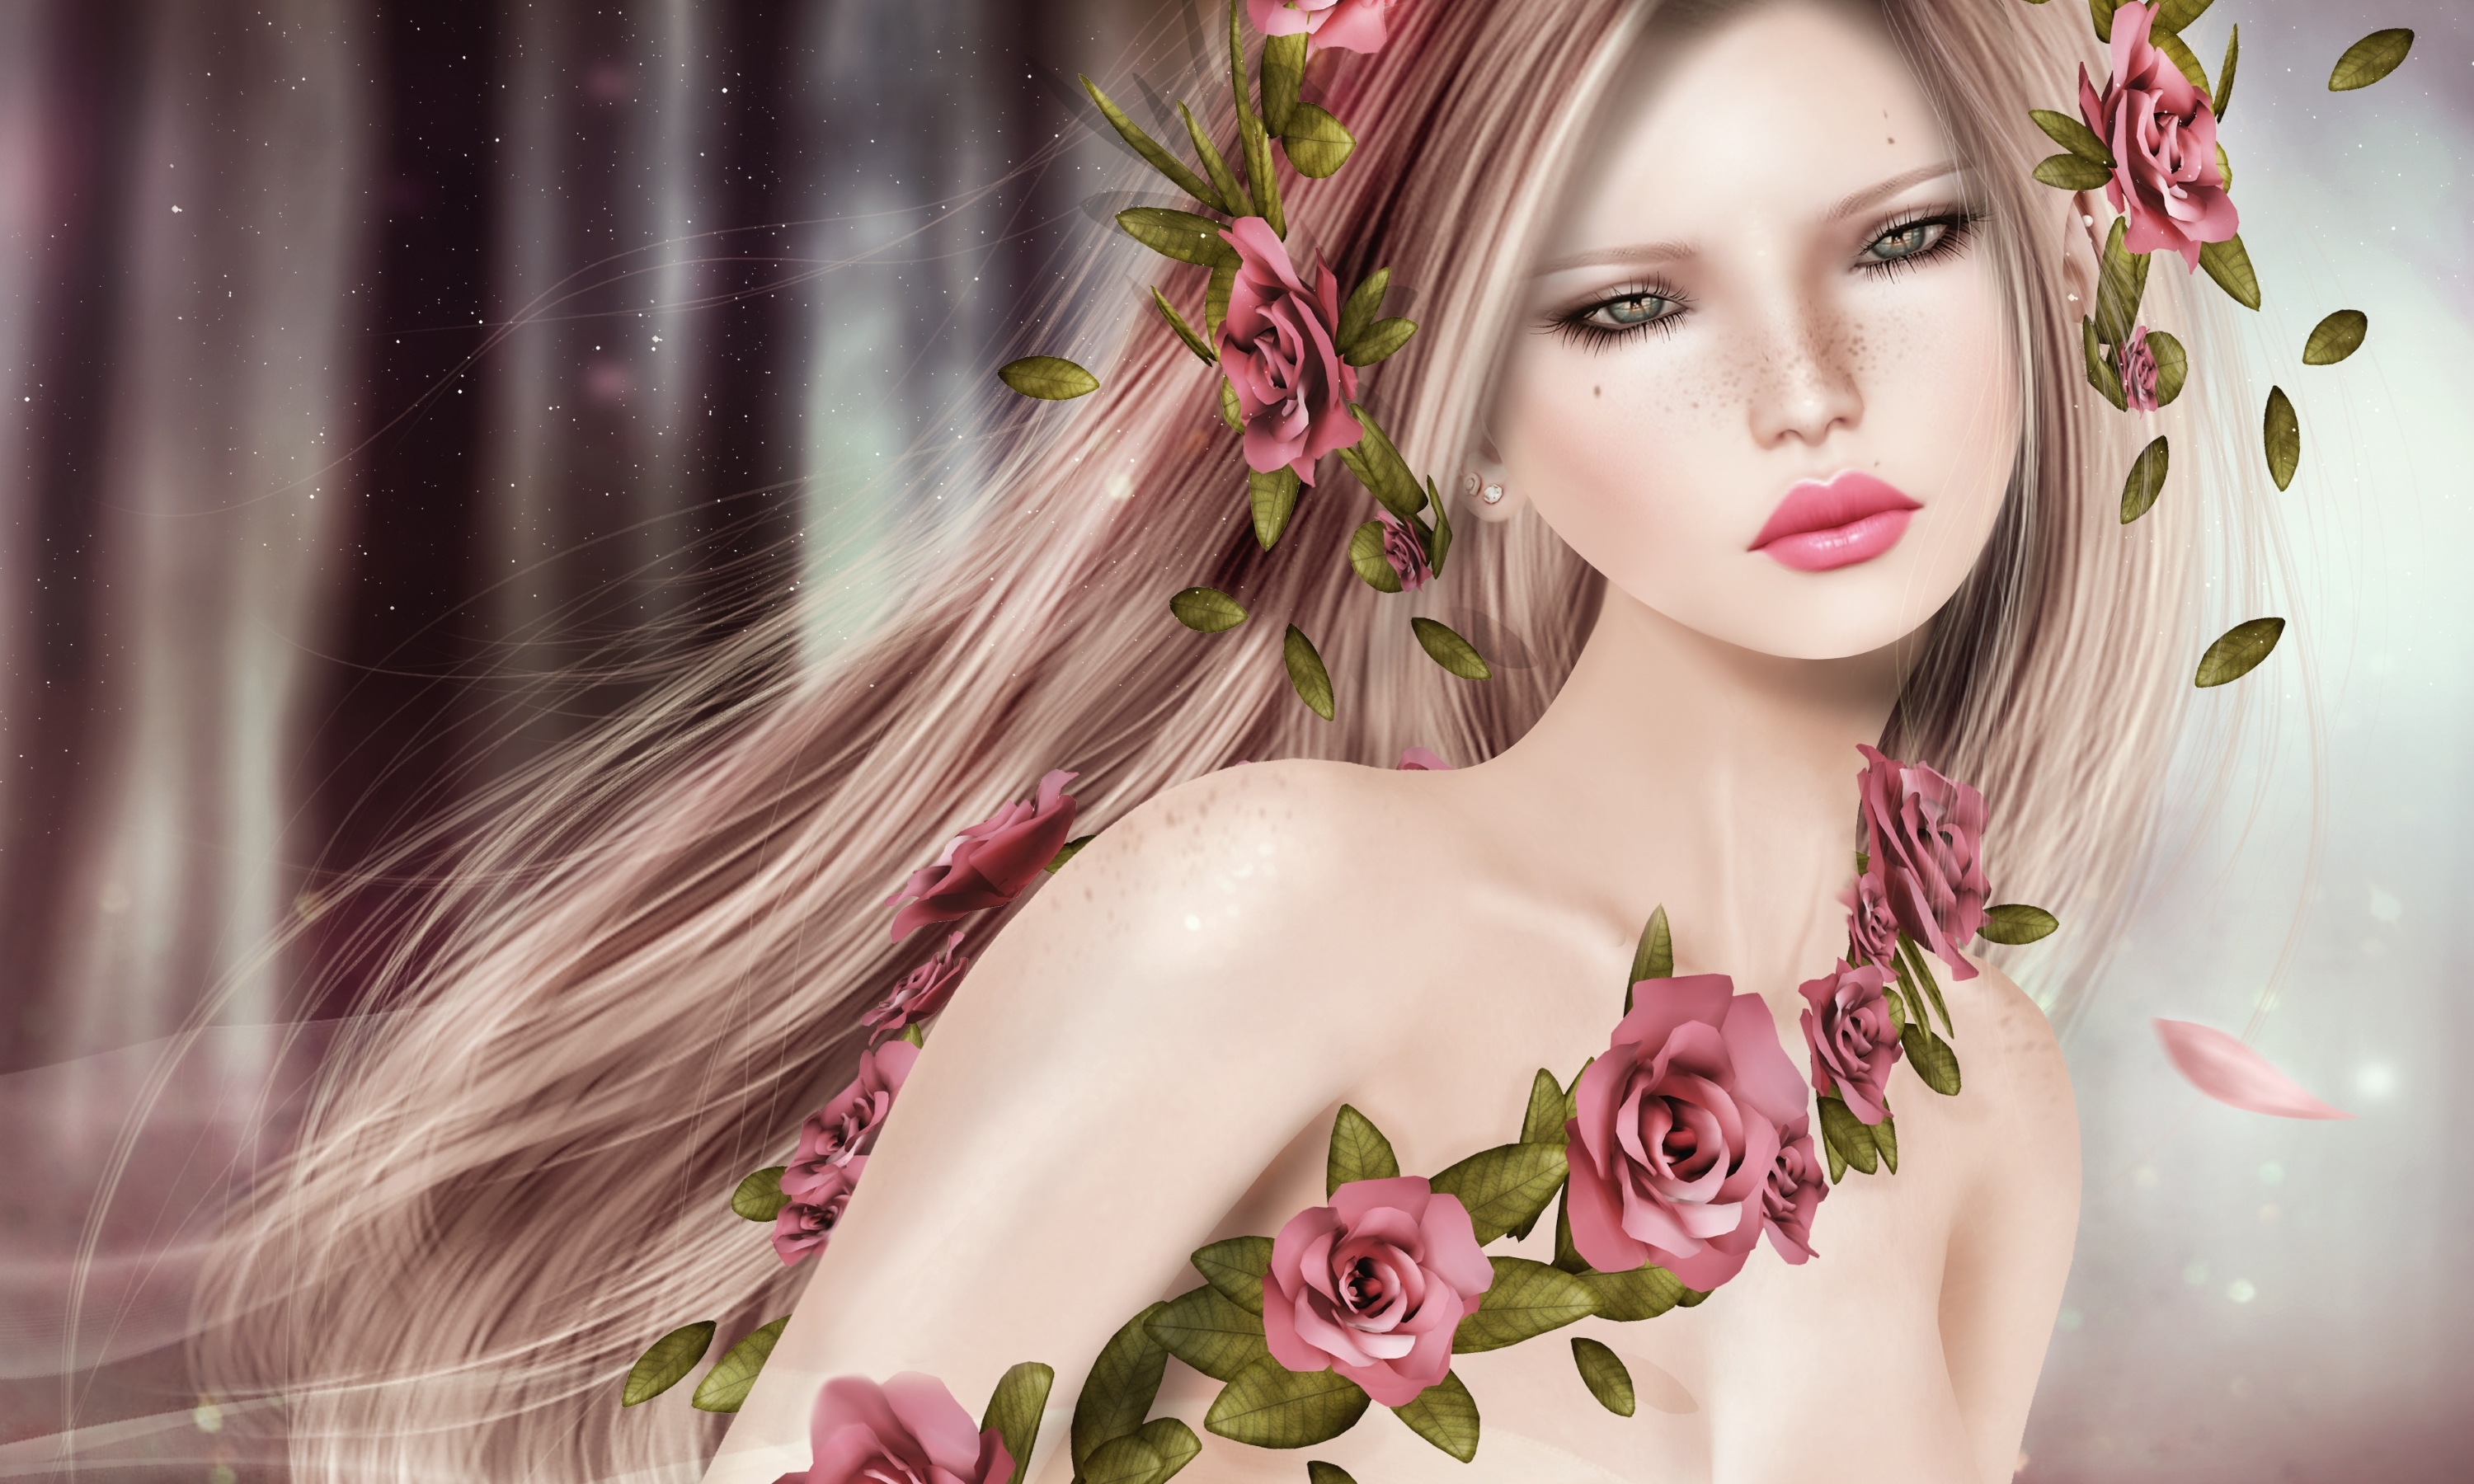 Blonde Fantasy Girl Lipstick Pink Rose Rose Woman 3000x1800